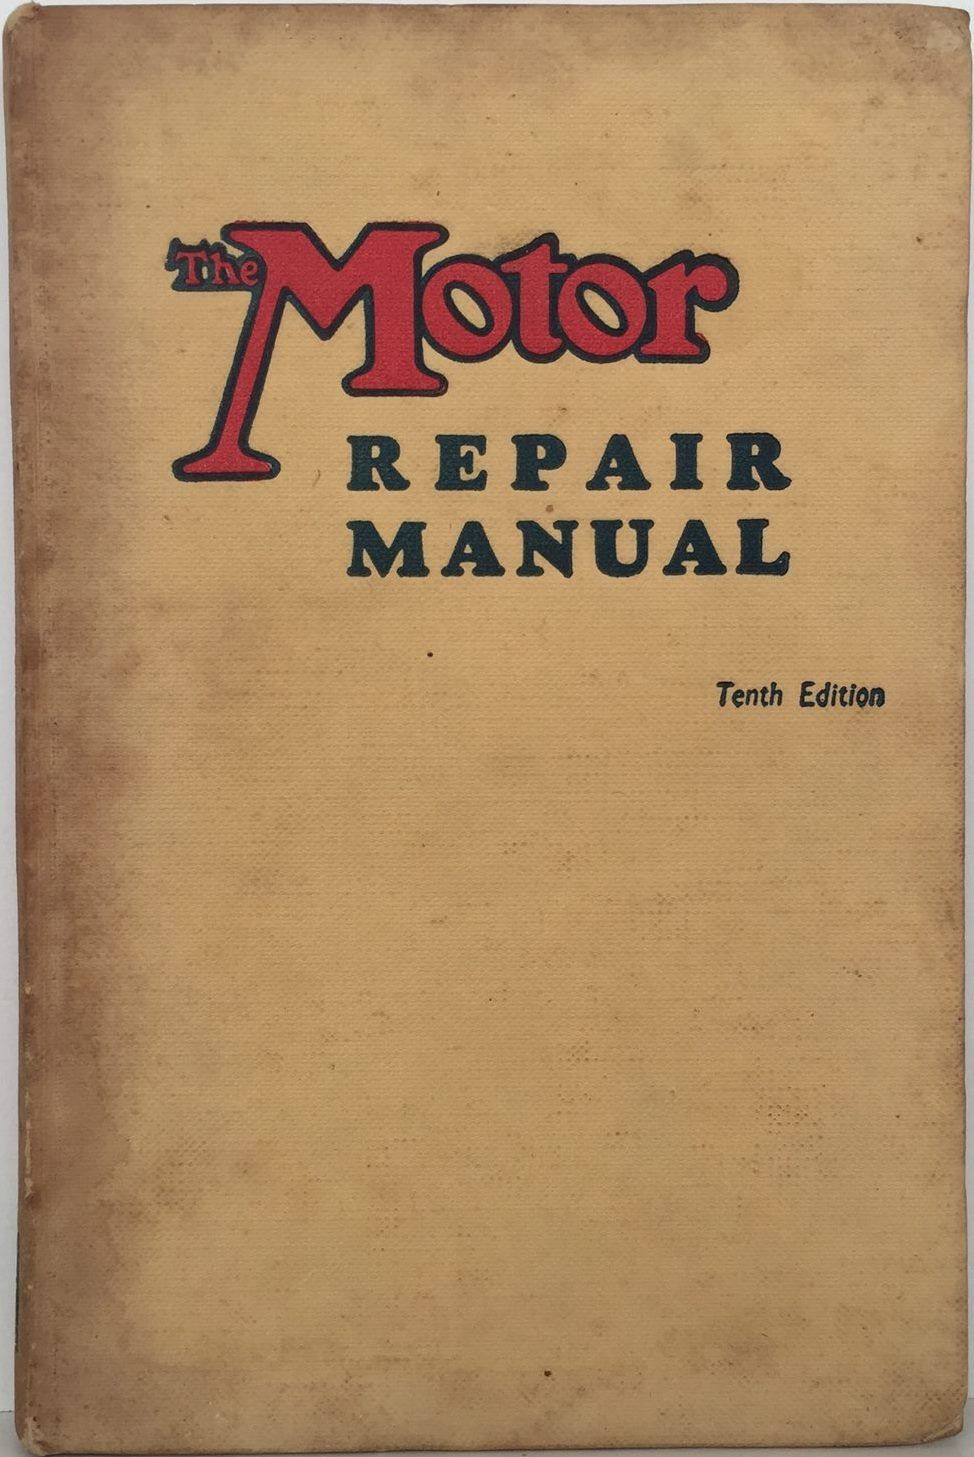 THE MOTOR REPAIR MANUAL: Tenth Edition